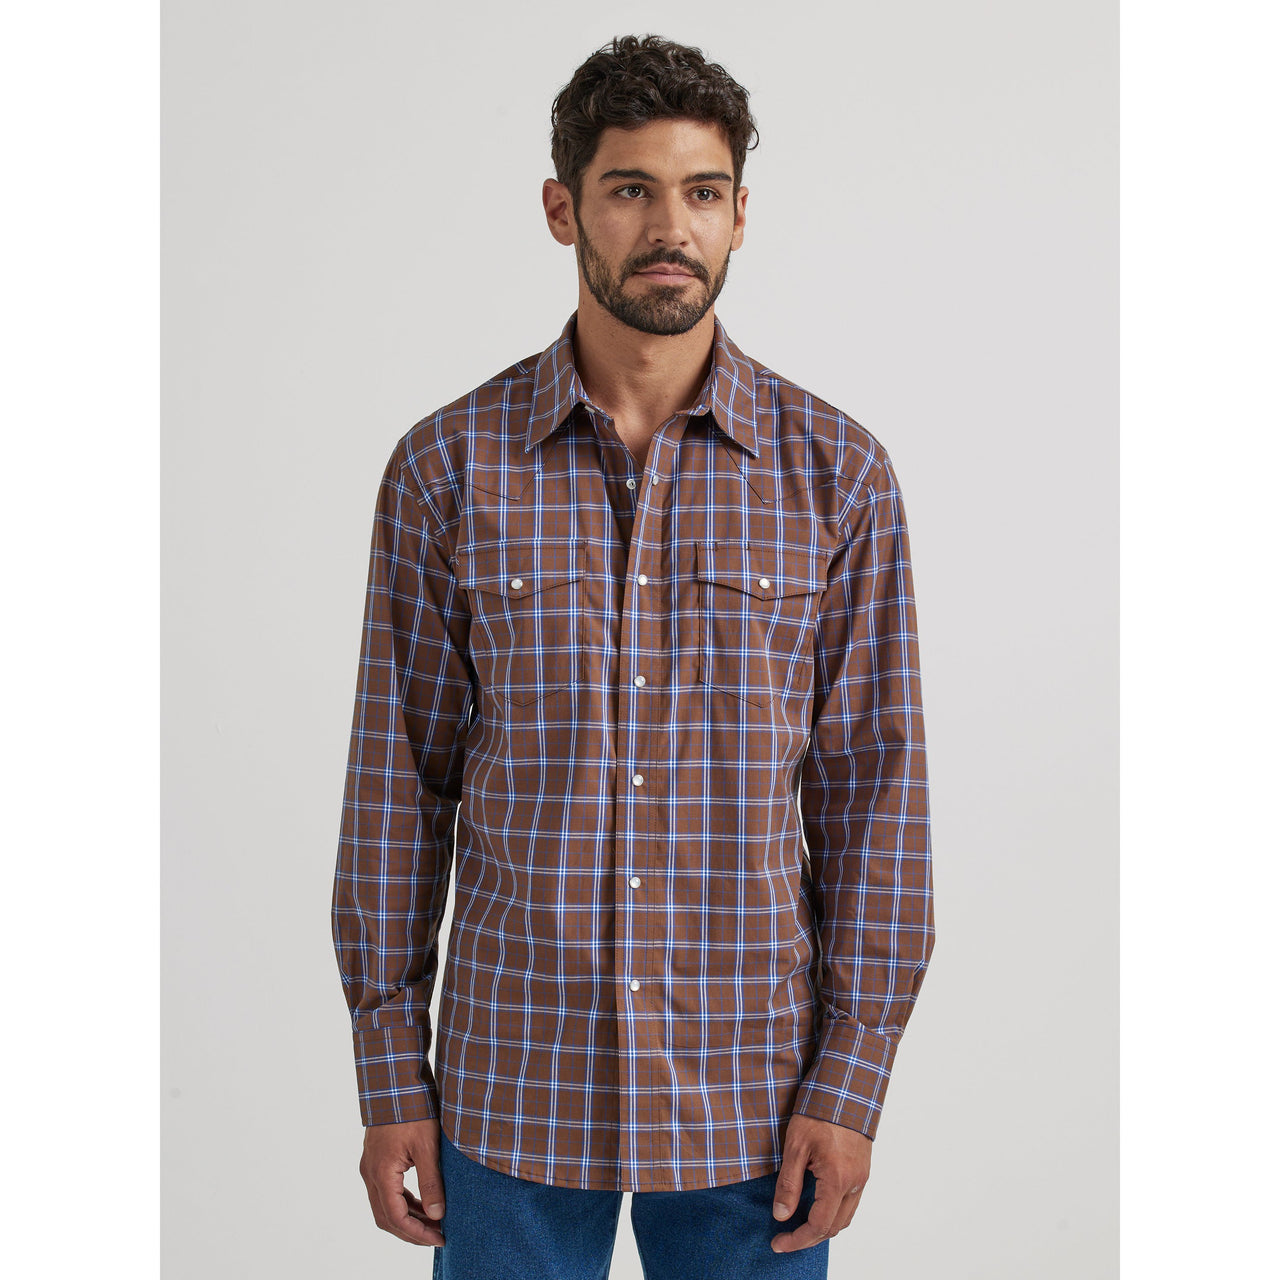 Wrangler Men's Wrinkle Resist Long Sleeve Shirt - Brown